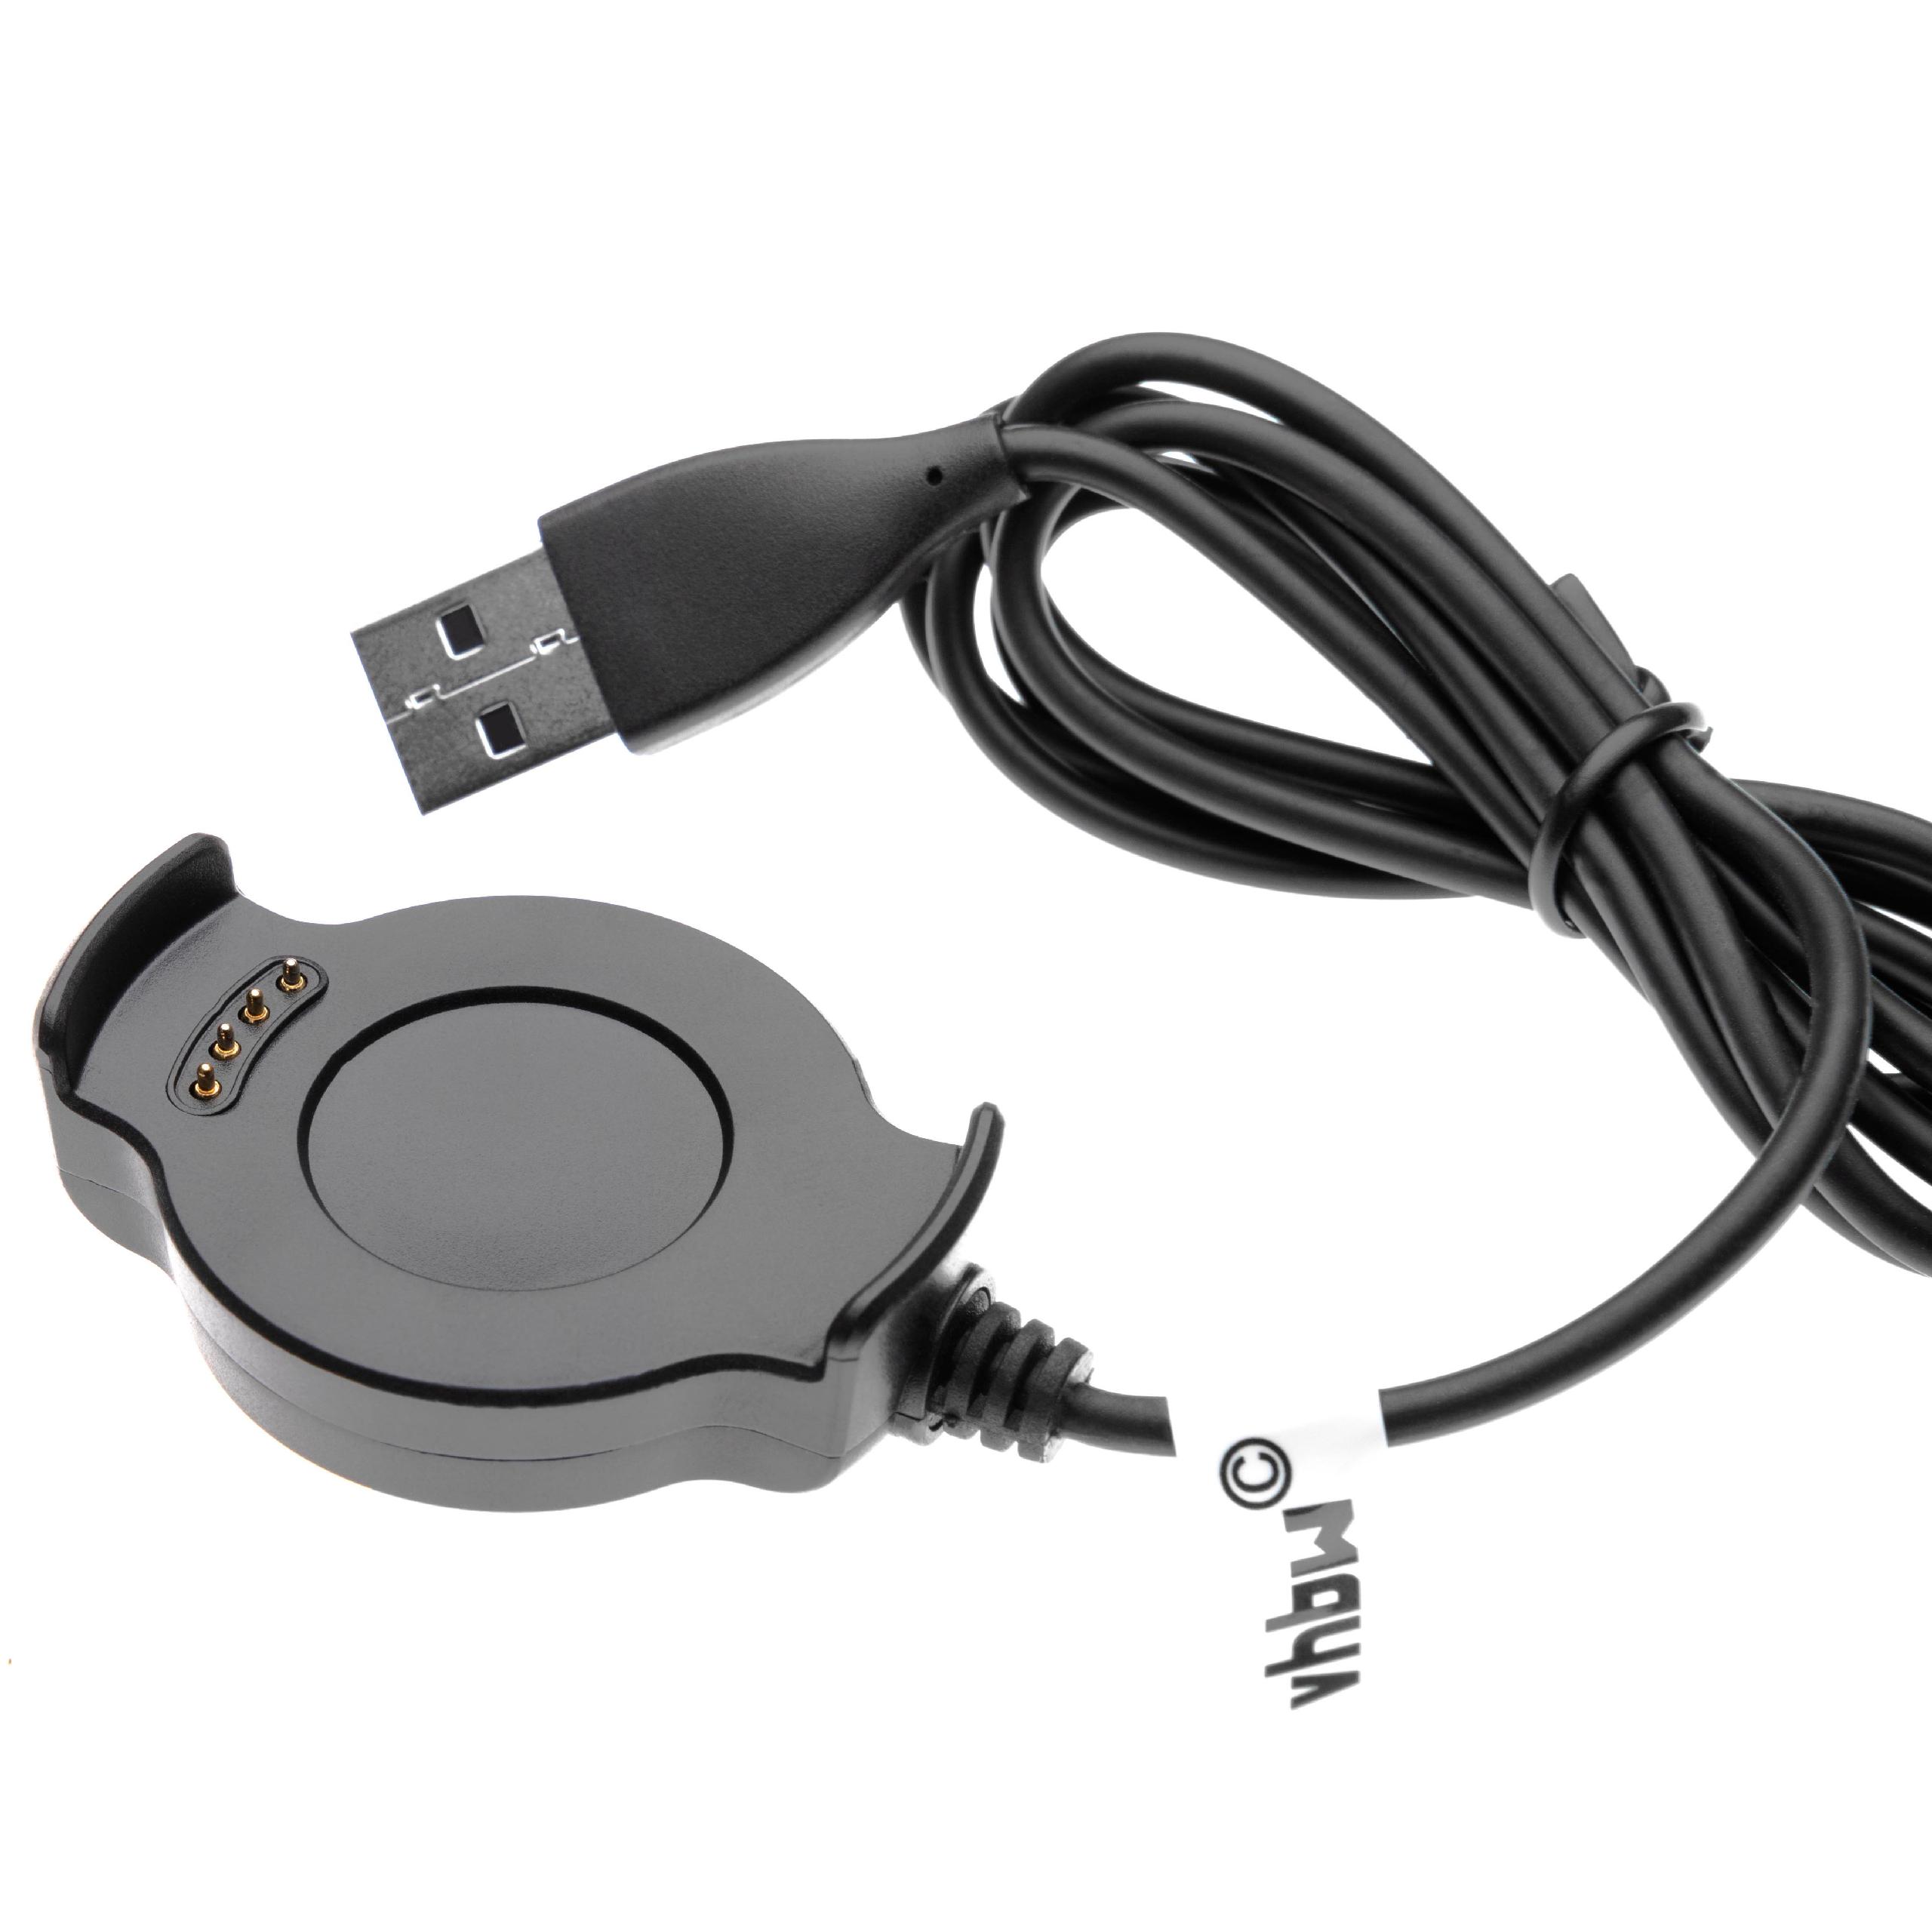 Cable de carga USB para smartwatch Huawei Watch 2 - negro 96 cm